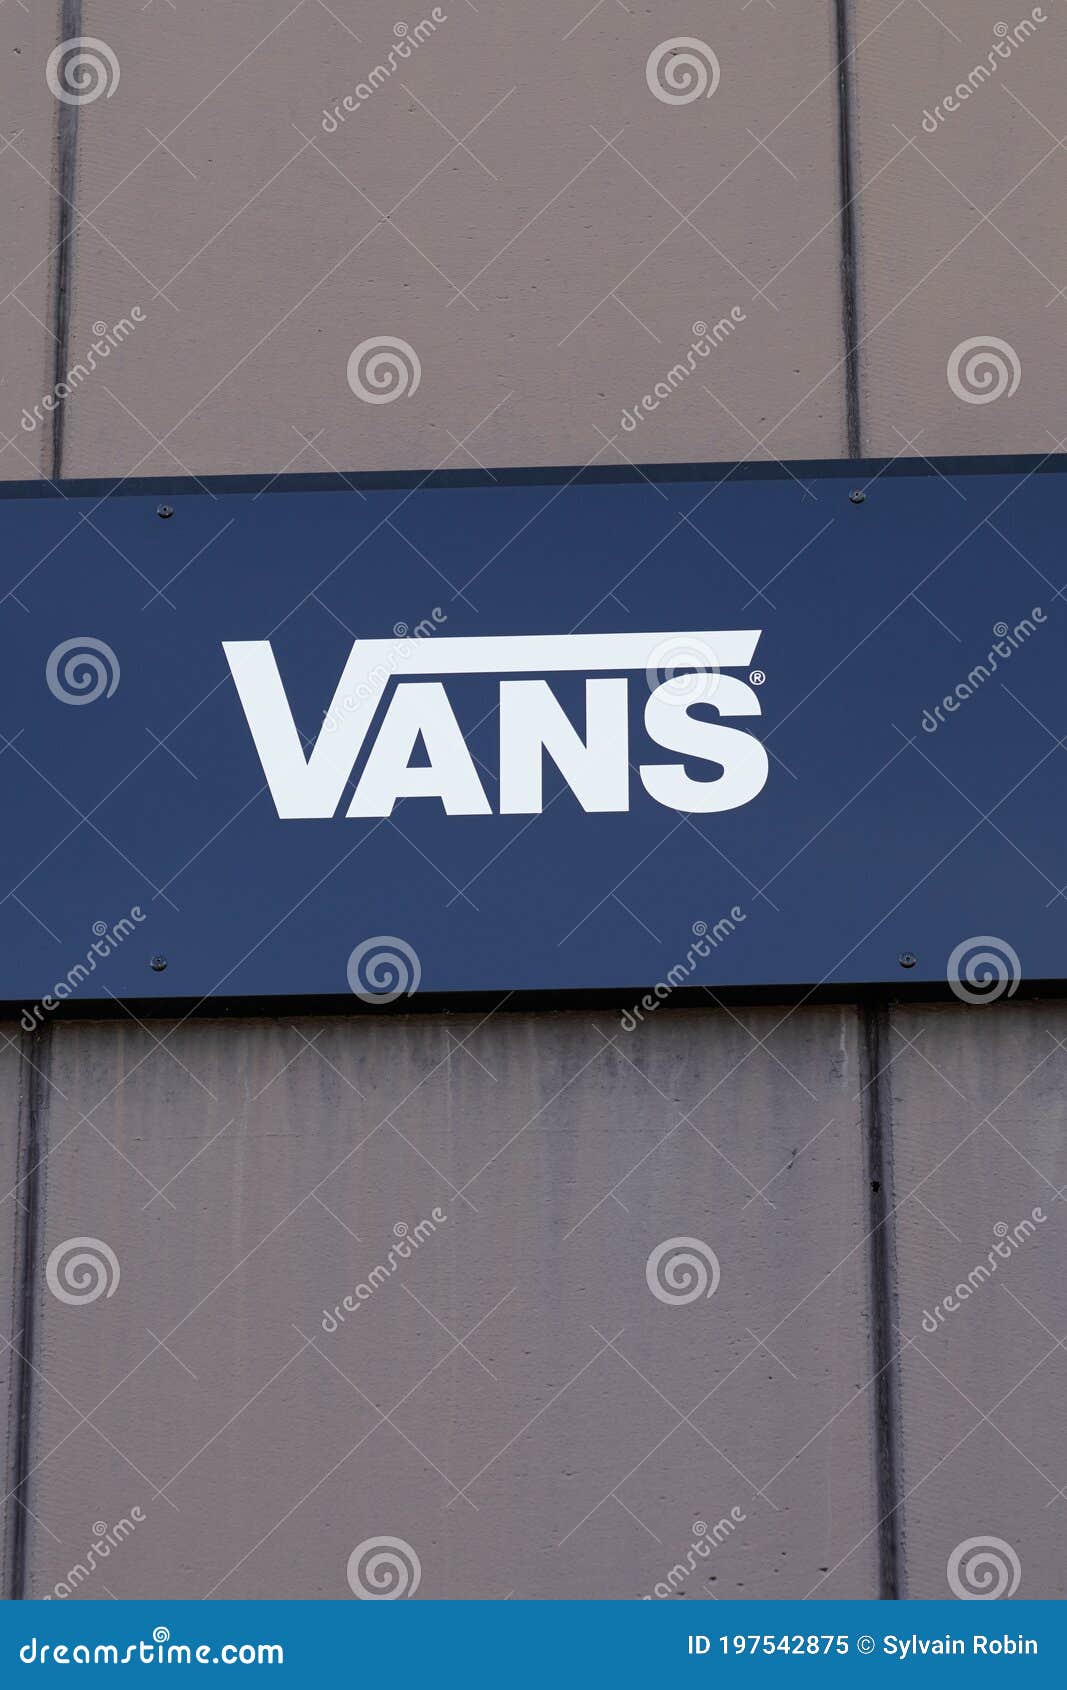 vans sign in